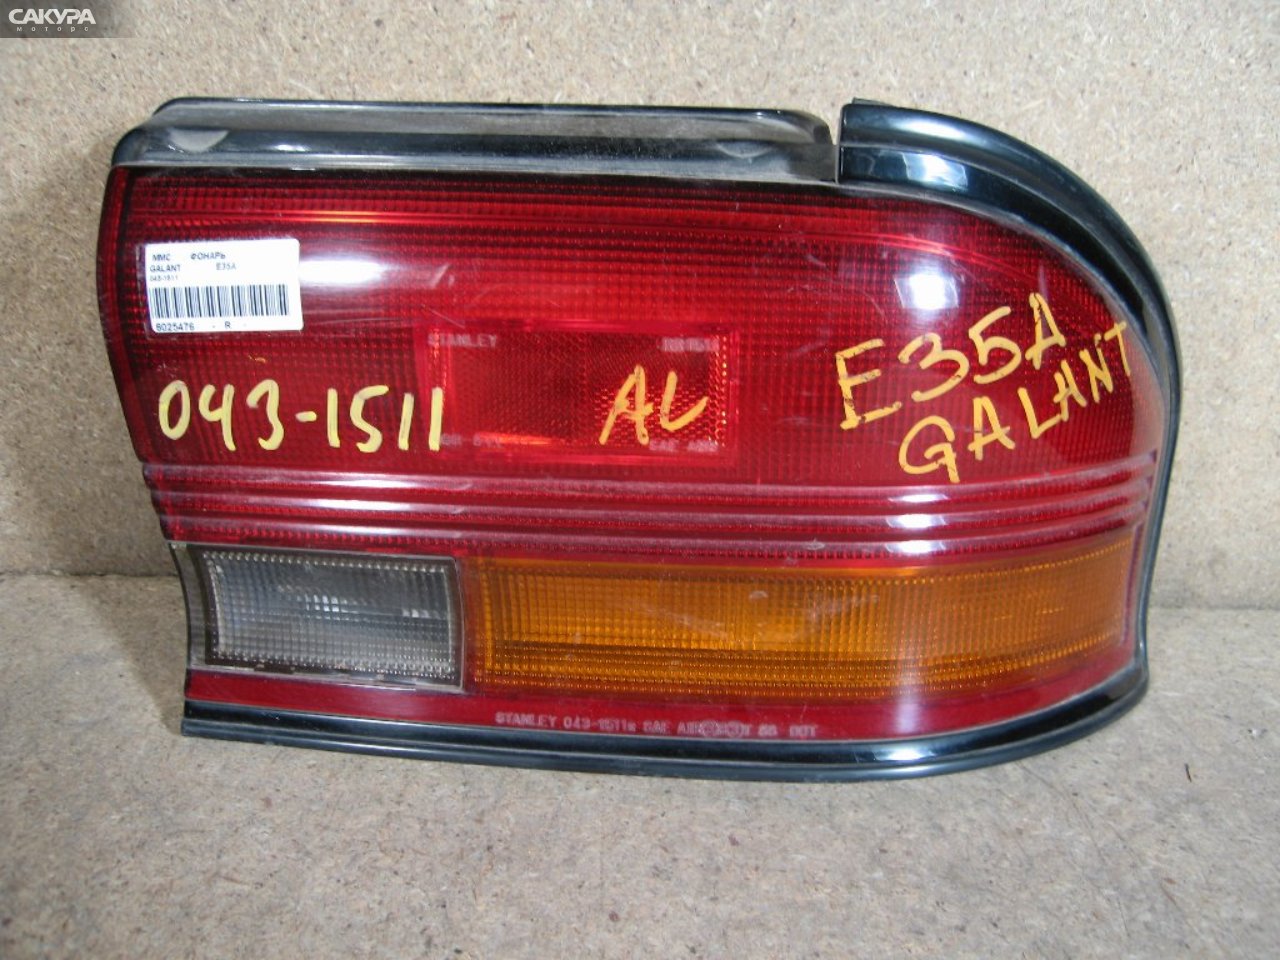 Фонарь стоп-сигнала правый Mitsubishi Galant E35A 043-1511: купить в Сакура Абакан.